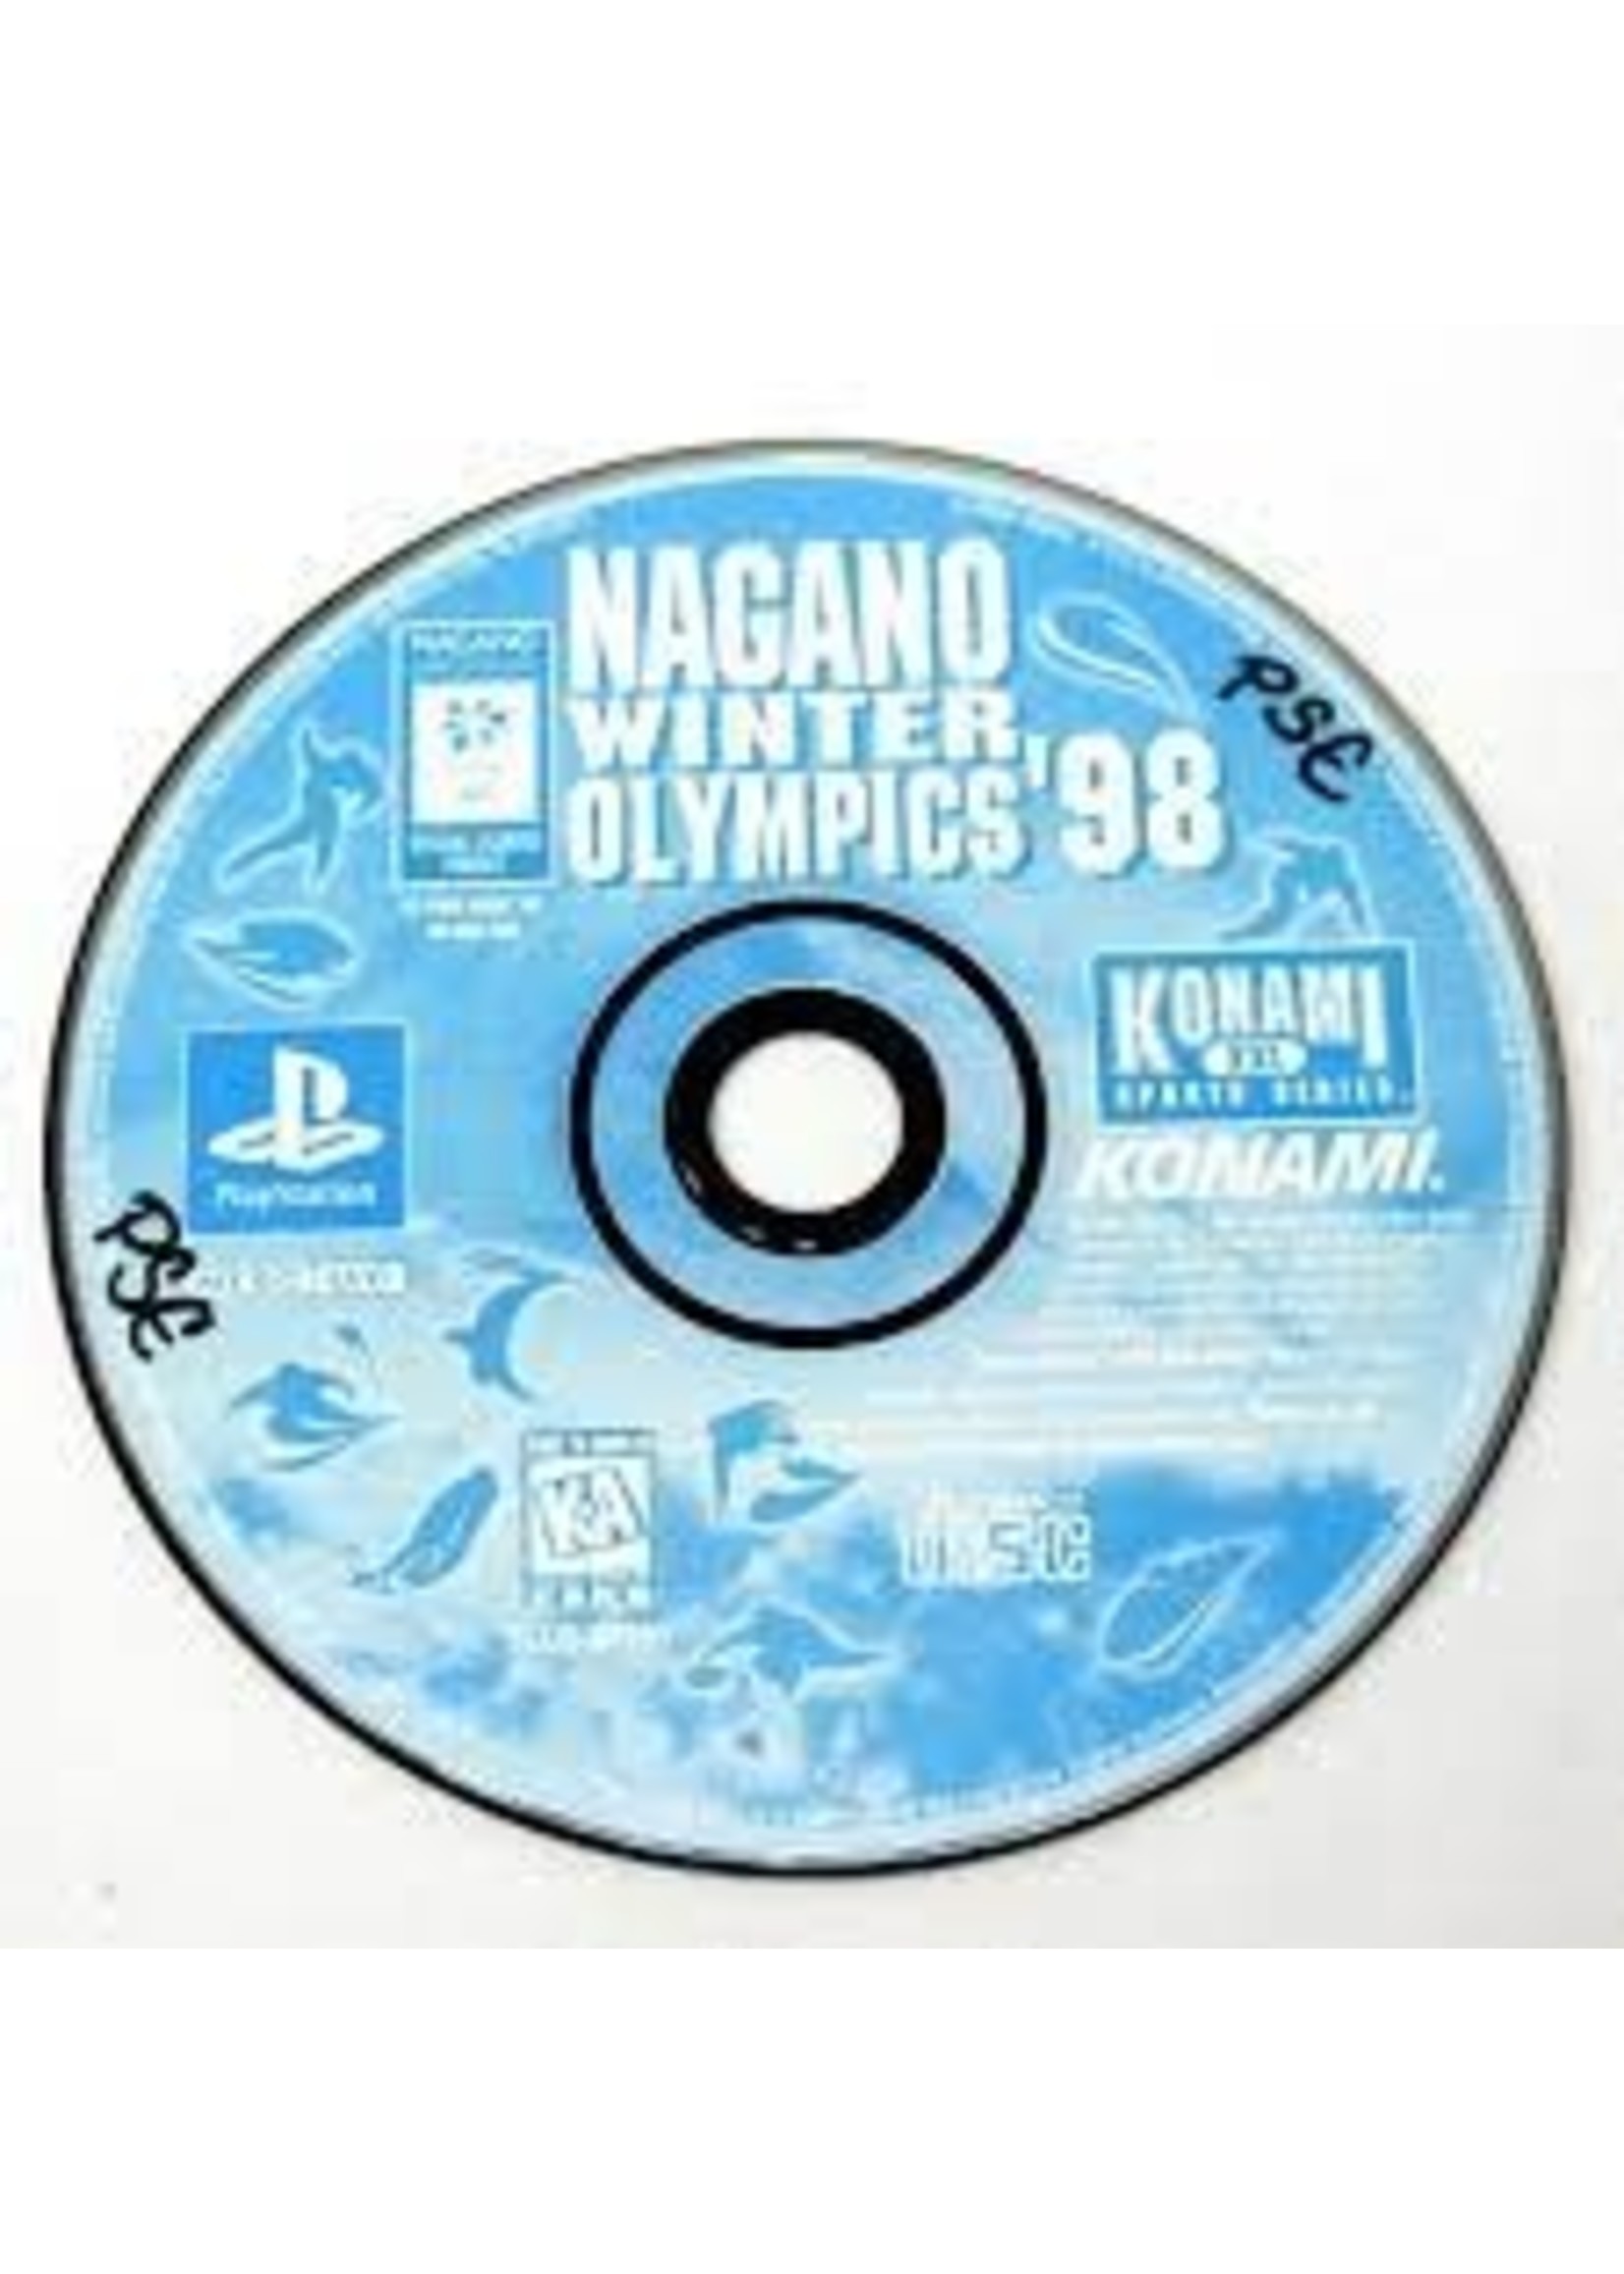 Sony Playstation 1 (PS1) Nagano Winter Olympics 98 - Print